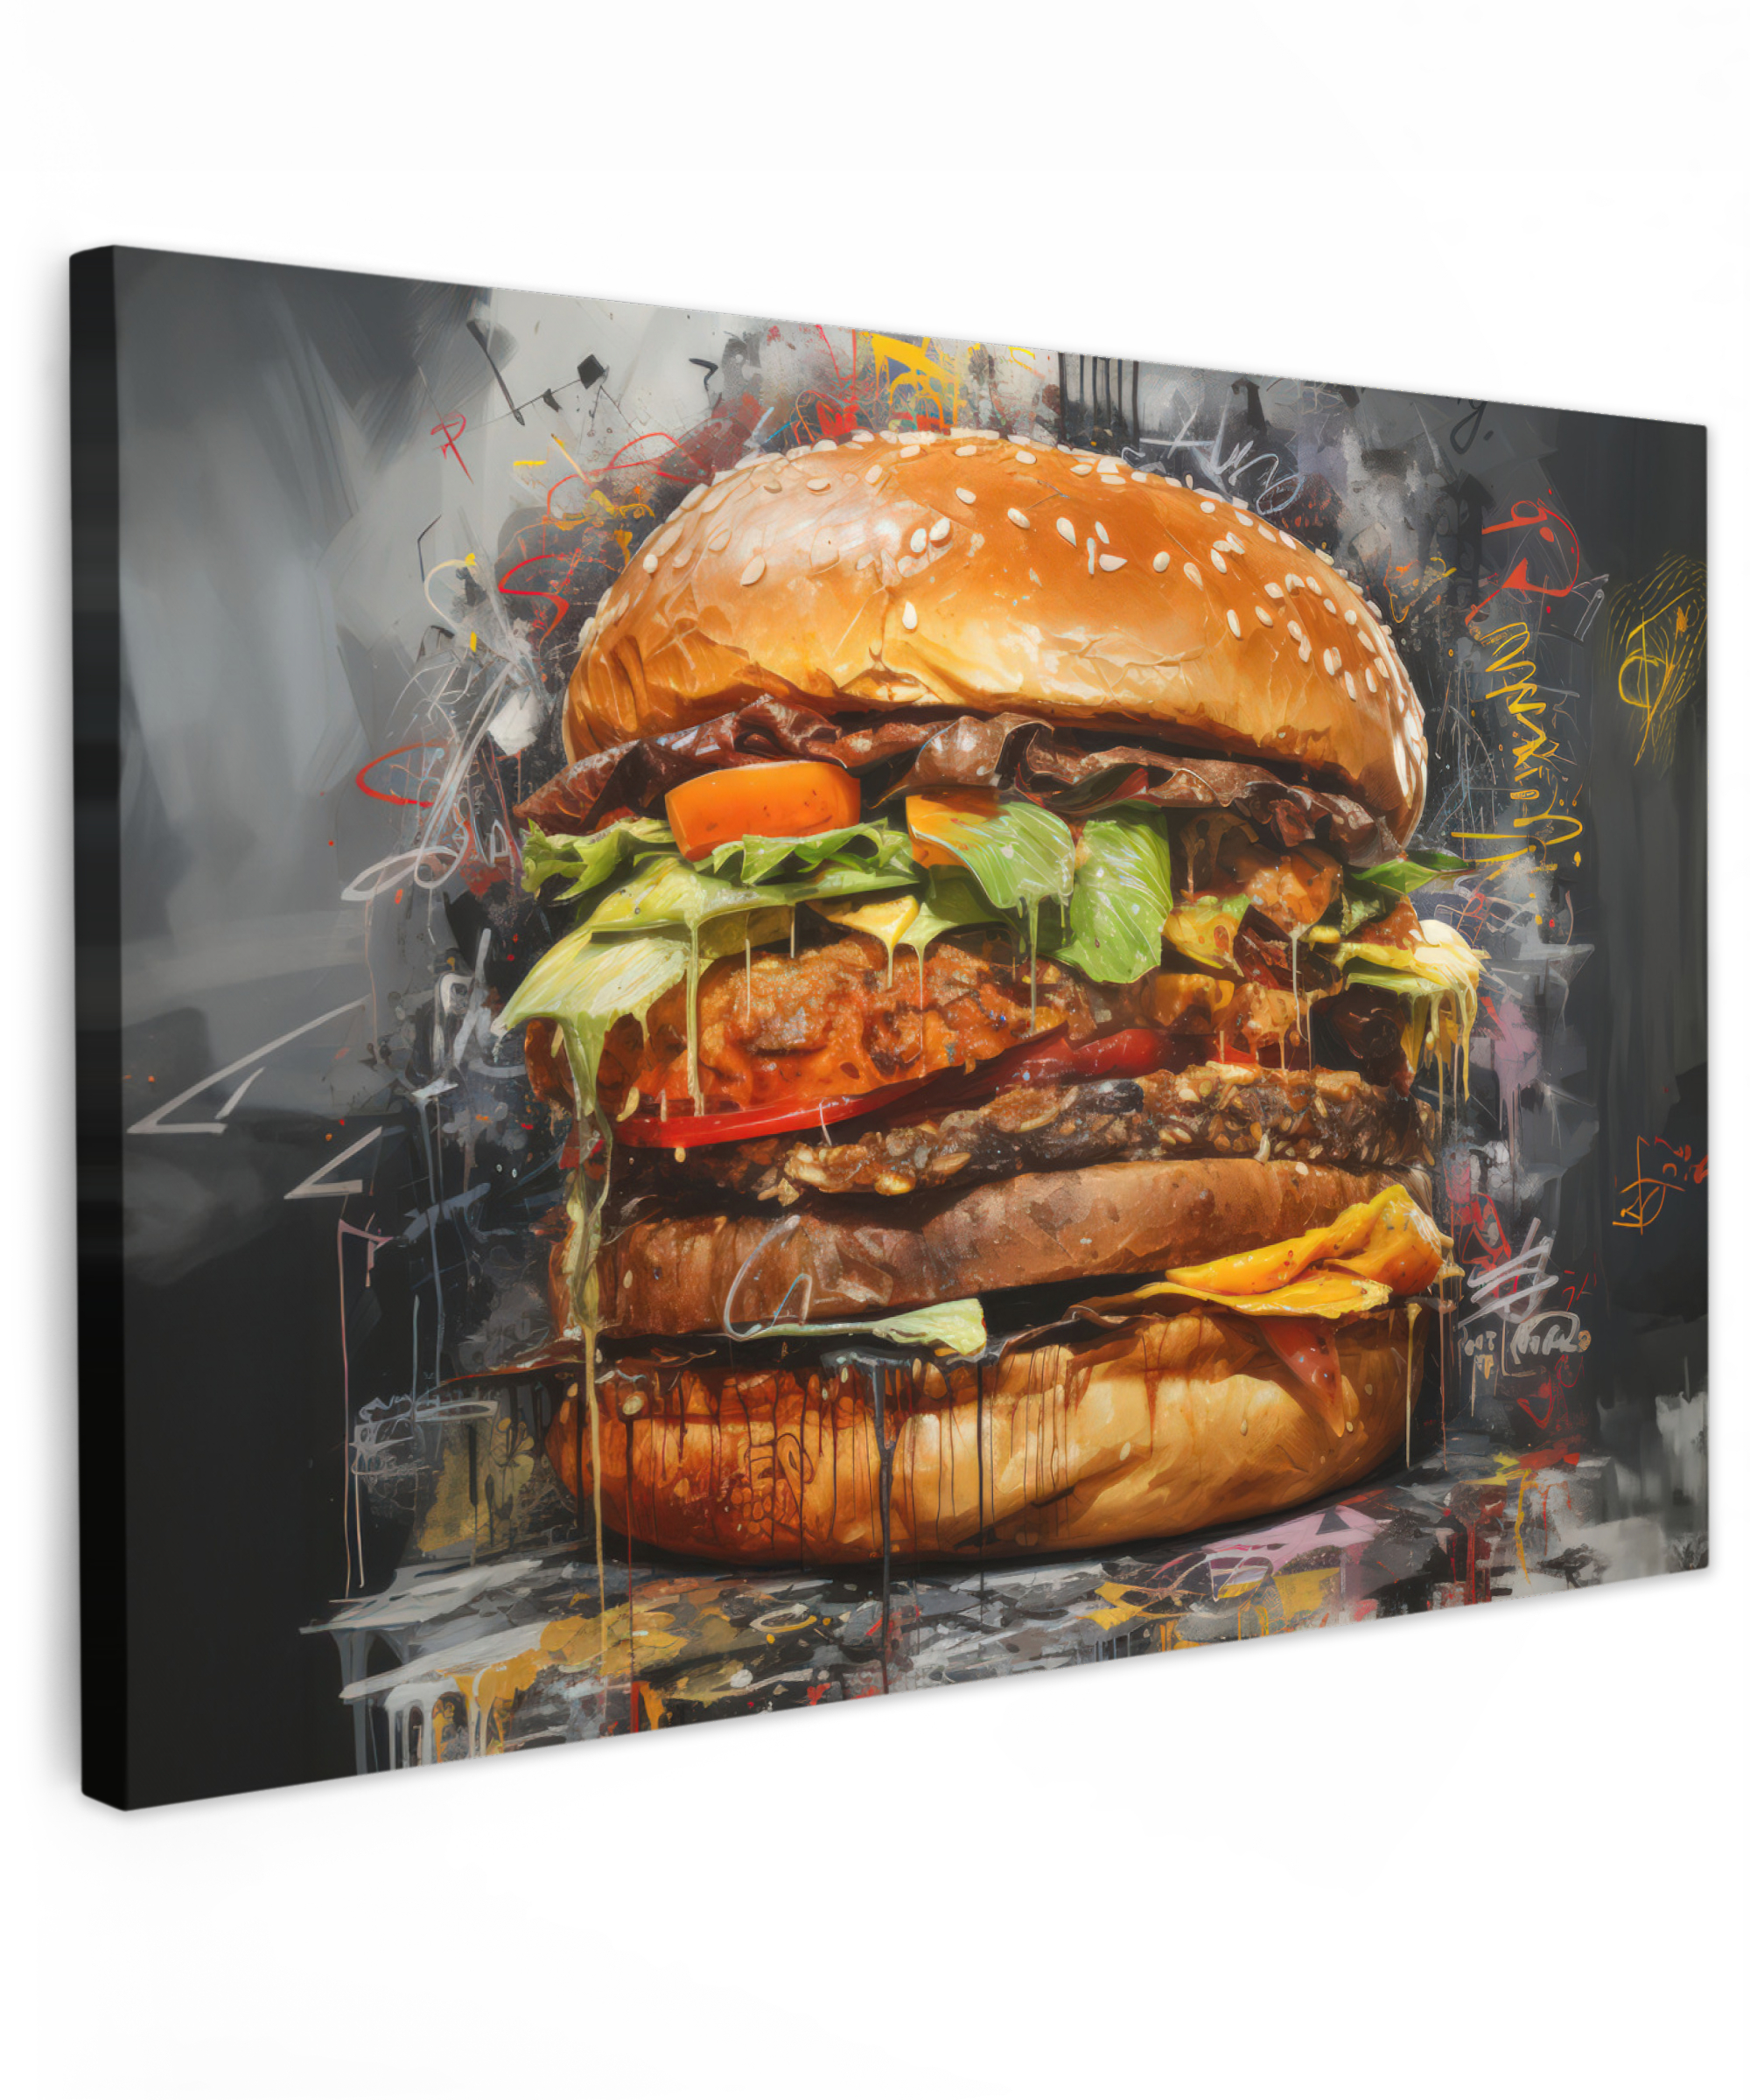 Tableau sur toile - Burger - Nourriture - Art - Gris - Graffiti